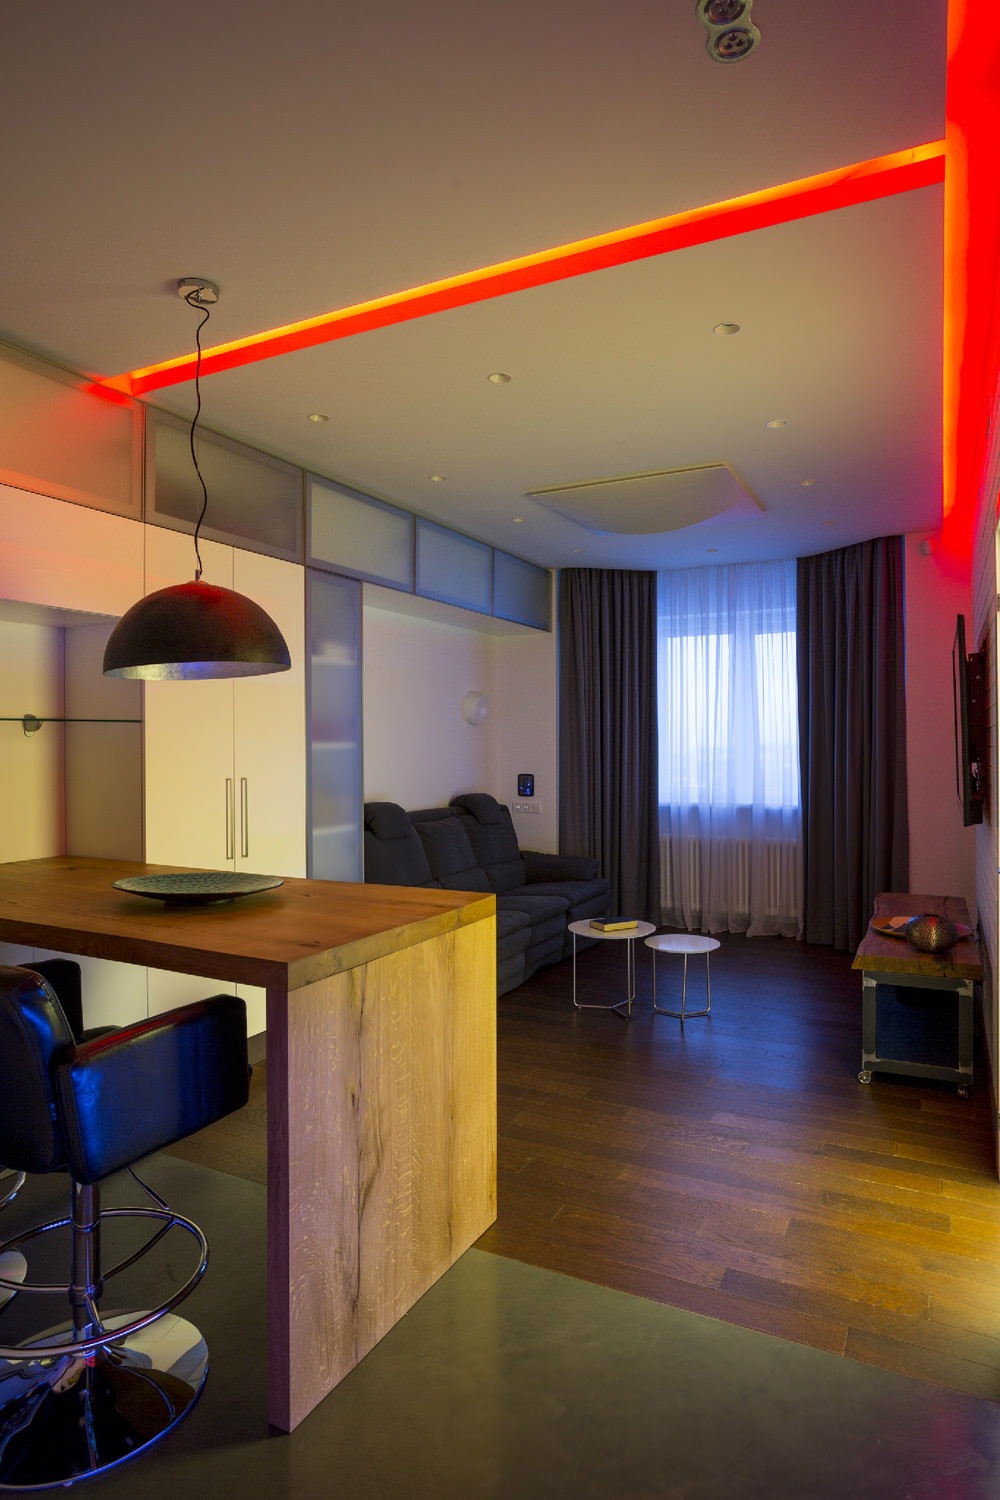 الإضاءة في تصميم شقة من غرفتين مساحتها 43 مترًا مربعًا. م.